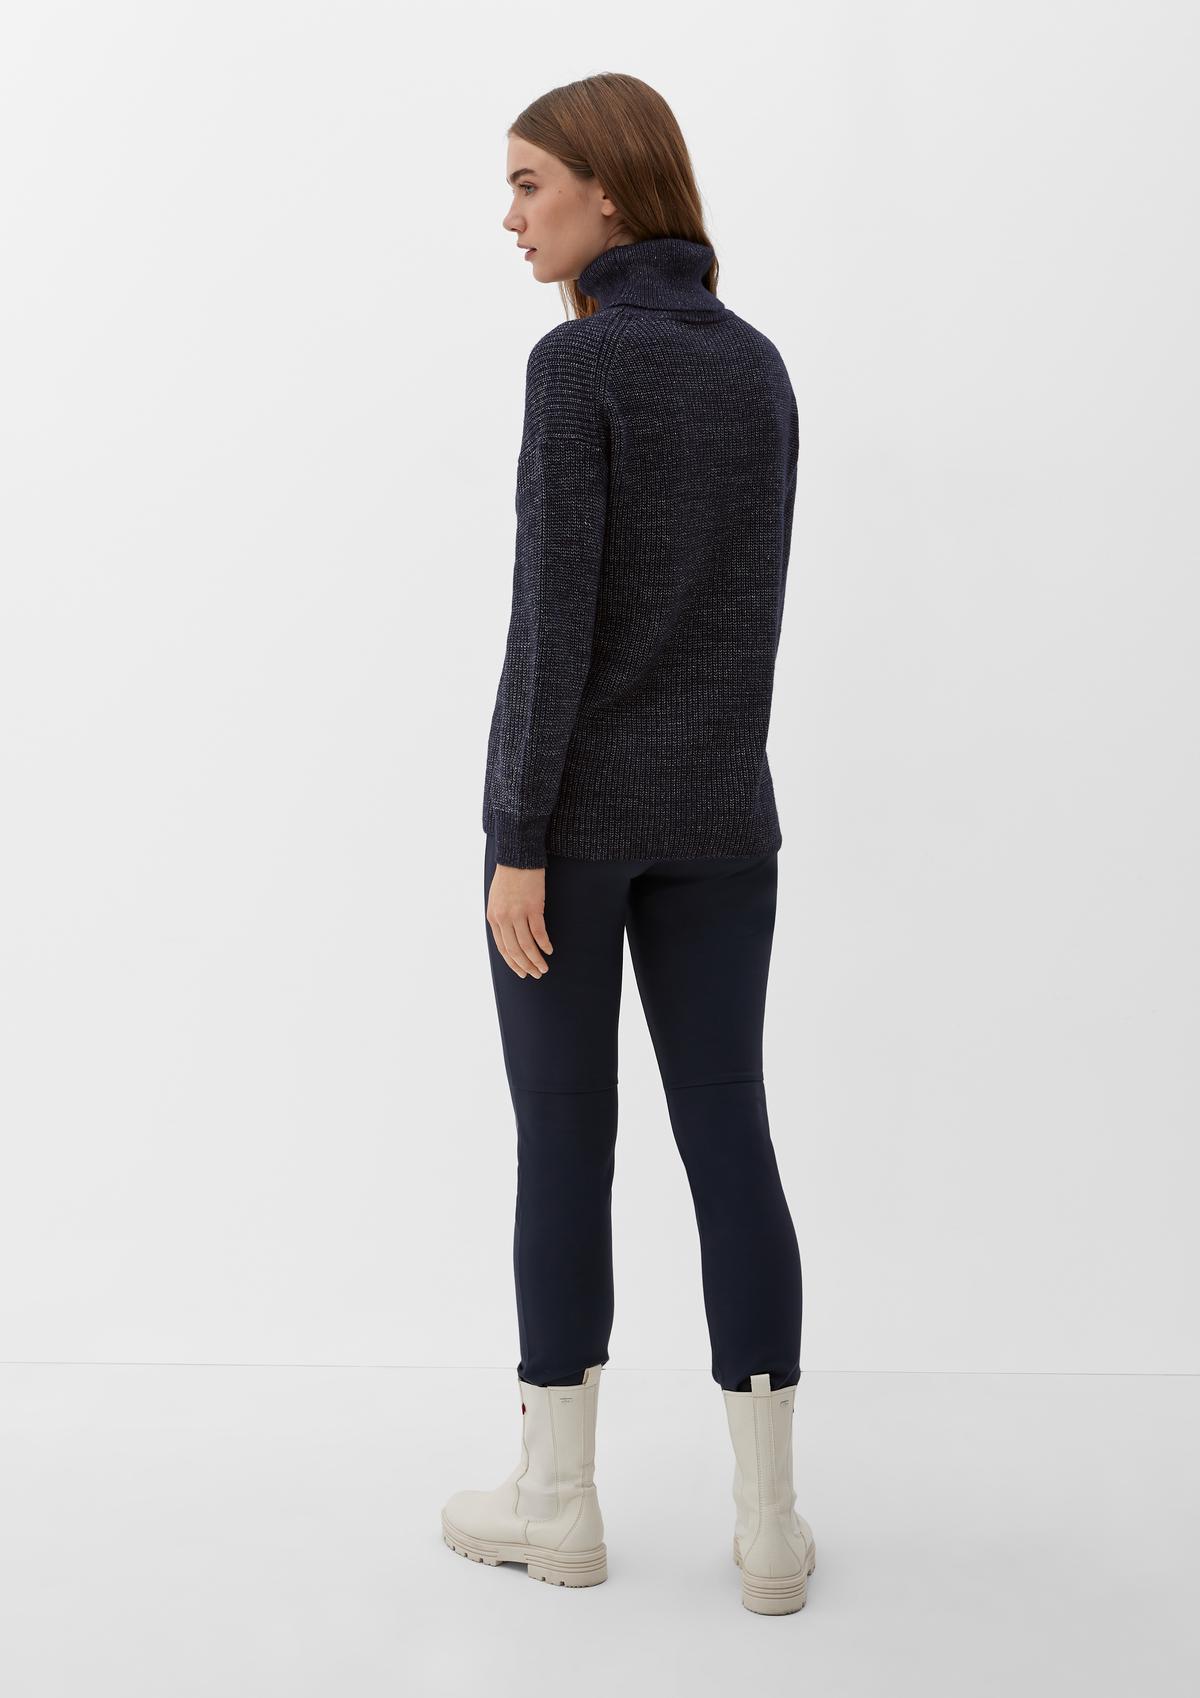 SWEATY BETTY Shakti Wool Blend Turtleneck Sweater